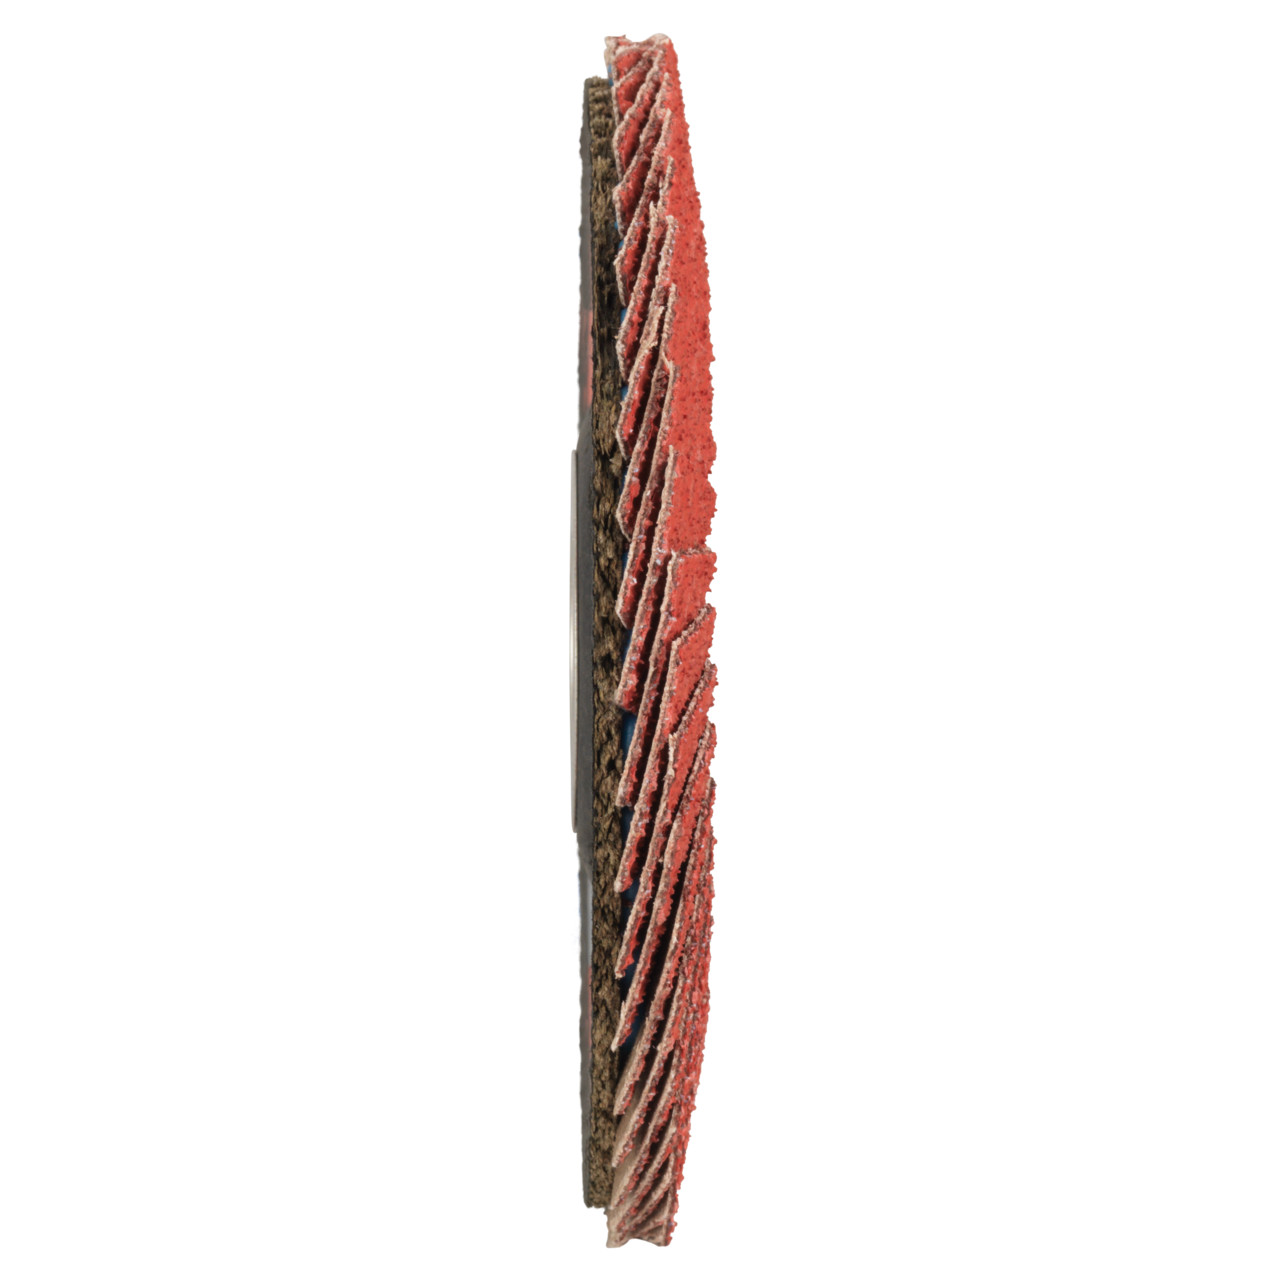 Tyrolit Gekartelde borgring DxH 178x22,23 CERAMIC voor roestvrij staal, P60, vorm: 27A - slingerontwerp (glasvezeldragerhuisontwerp), Art. 34166685